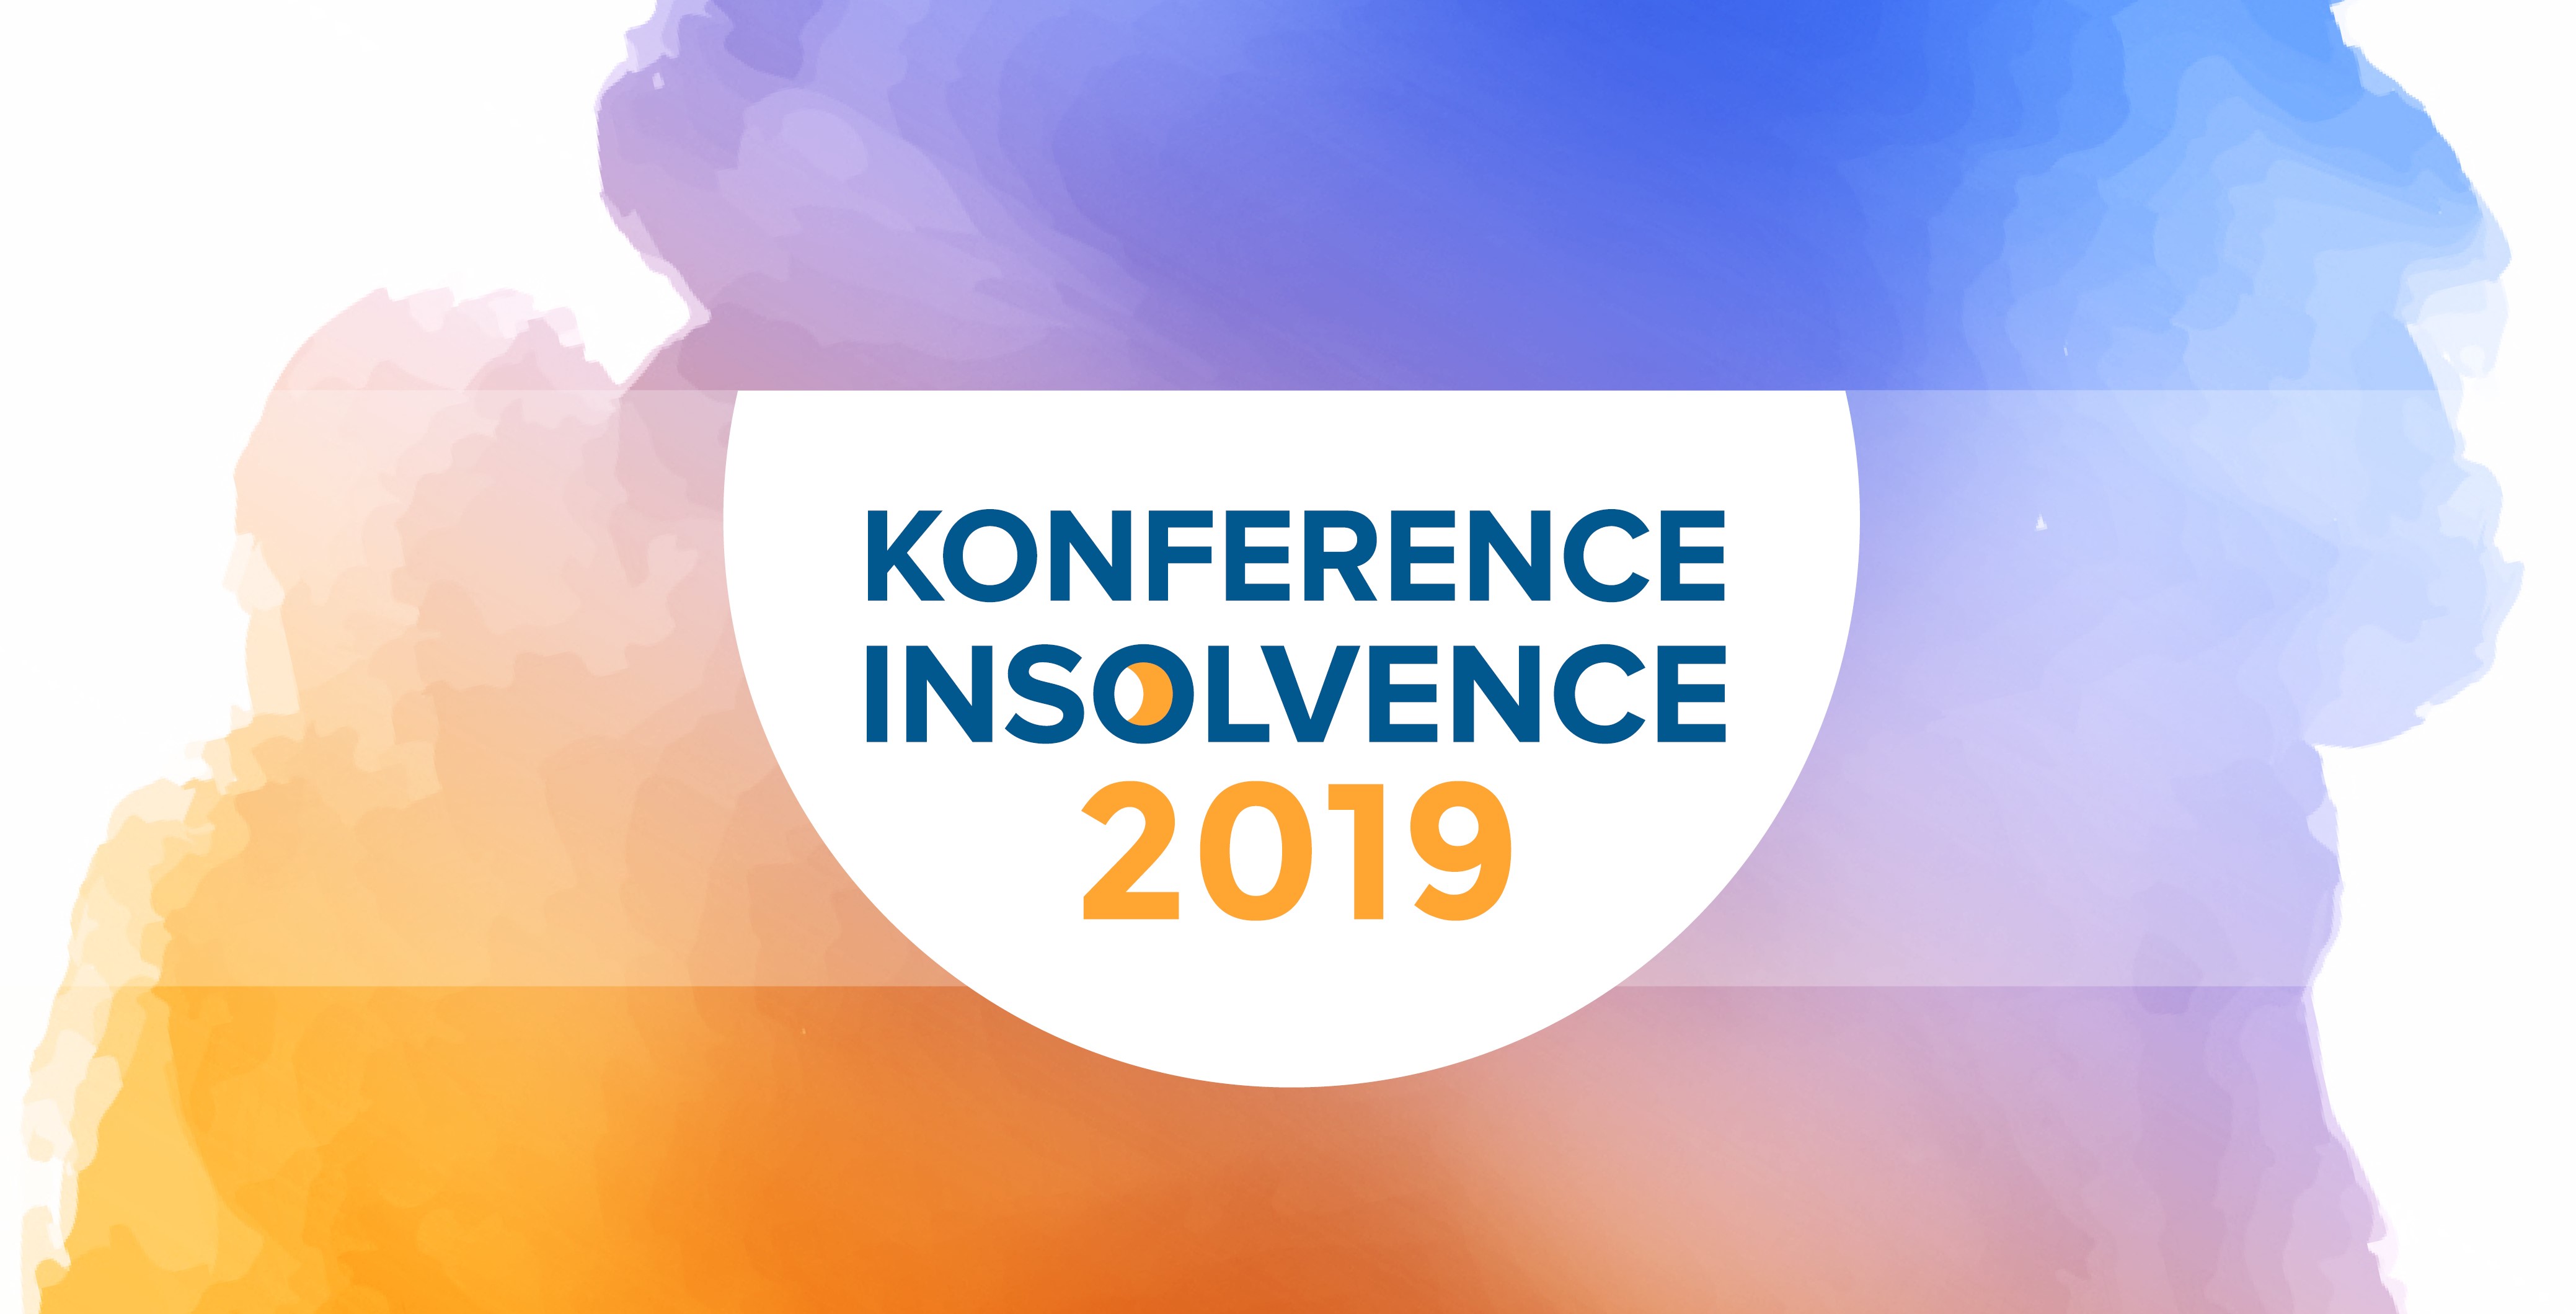 Konference Insolvence 2019